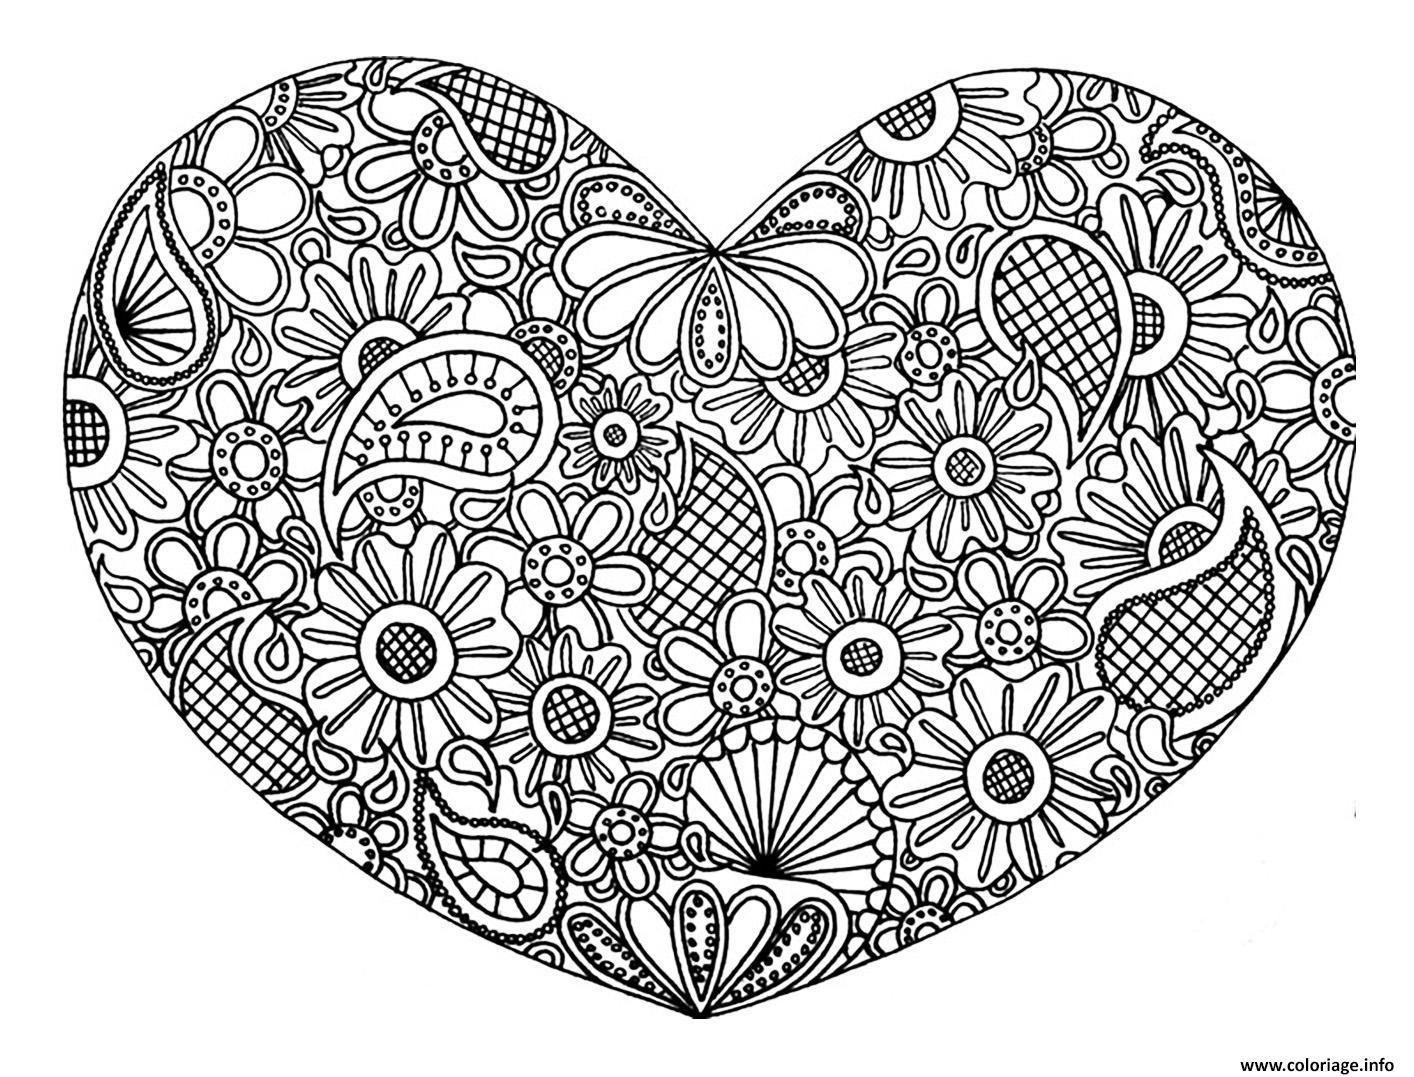 Coloriage Adulte Coeur Mandala Fleurs Zen Stvalentin - Jecolorie destiné Dessin À Imprimer Coeur